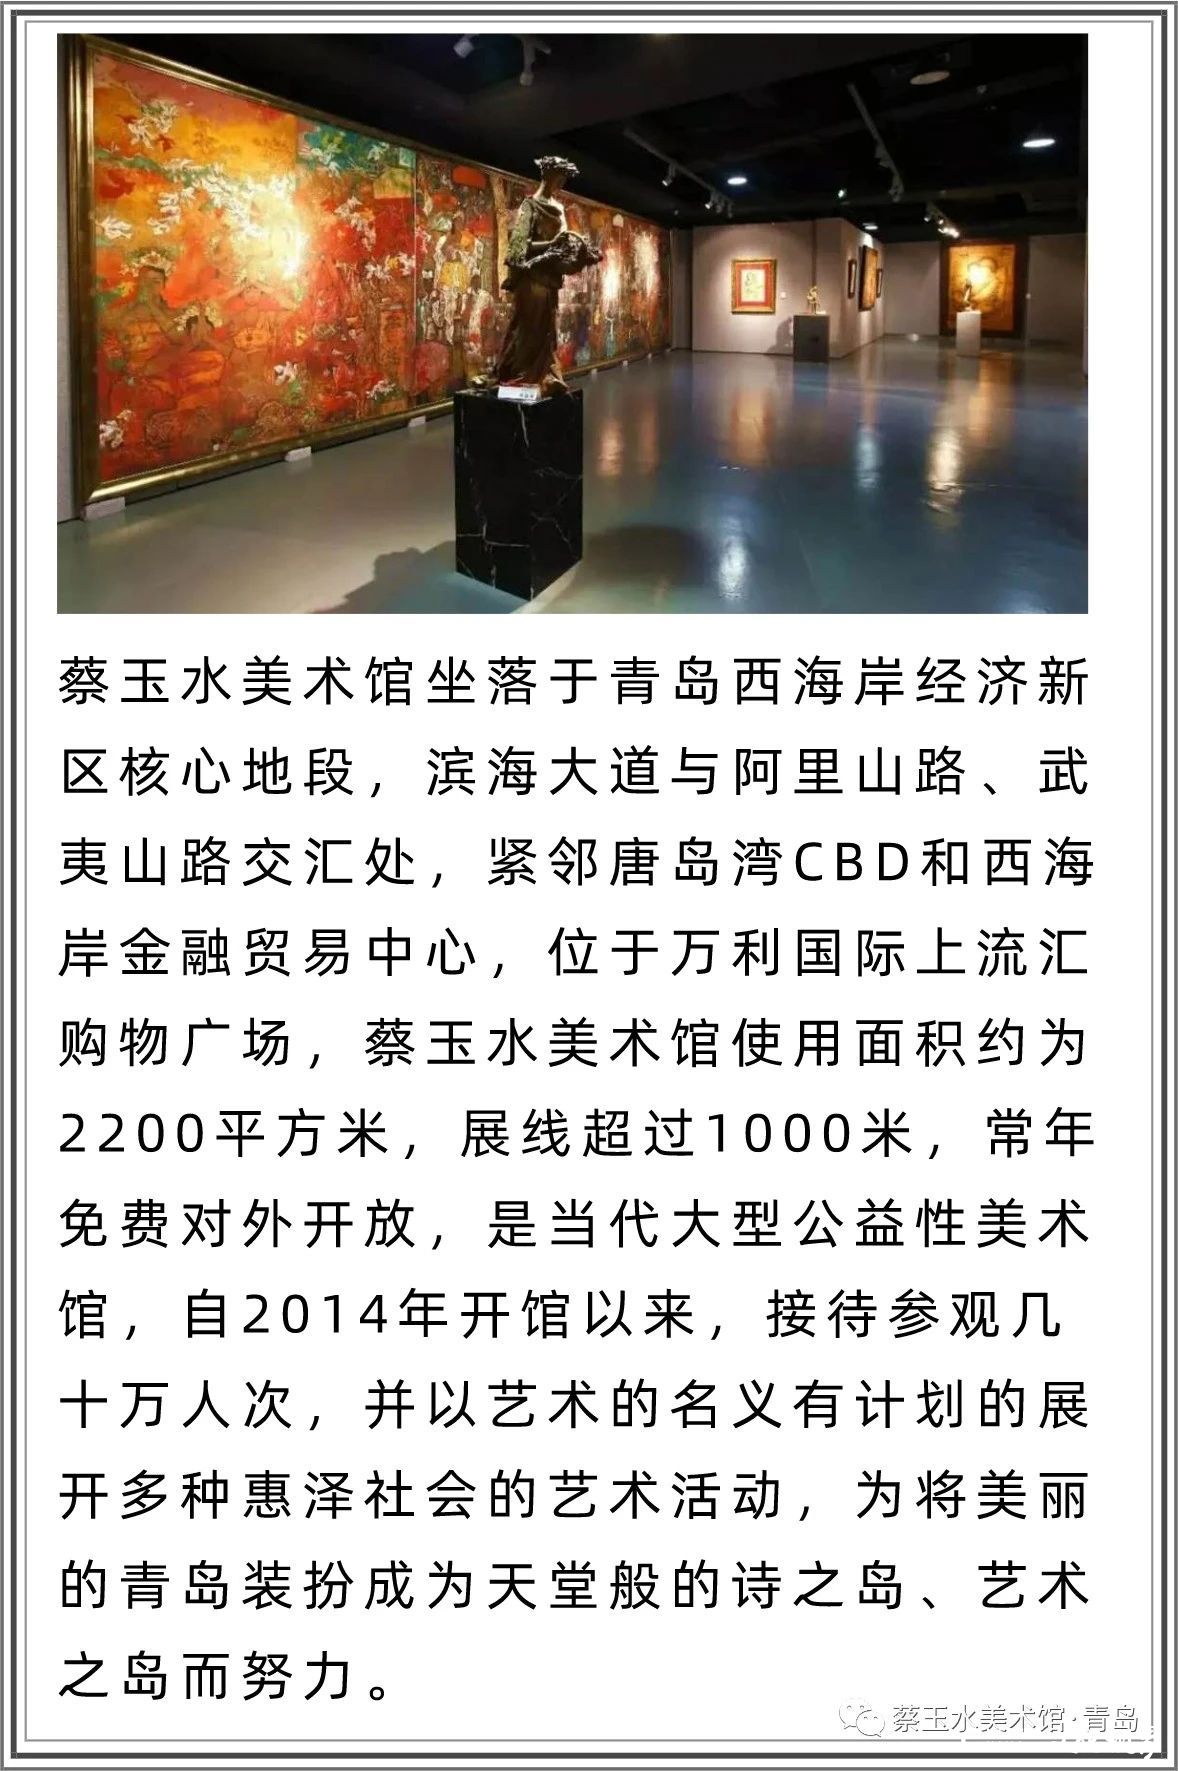 青岛蔡玉水美术馆|著名艺术家蔡玉水：绘画创作让自己变成一个有民族气魄、有历史担当、有时代责任的人